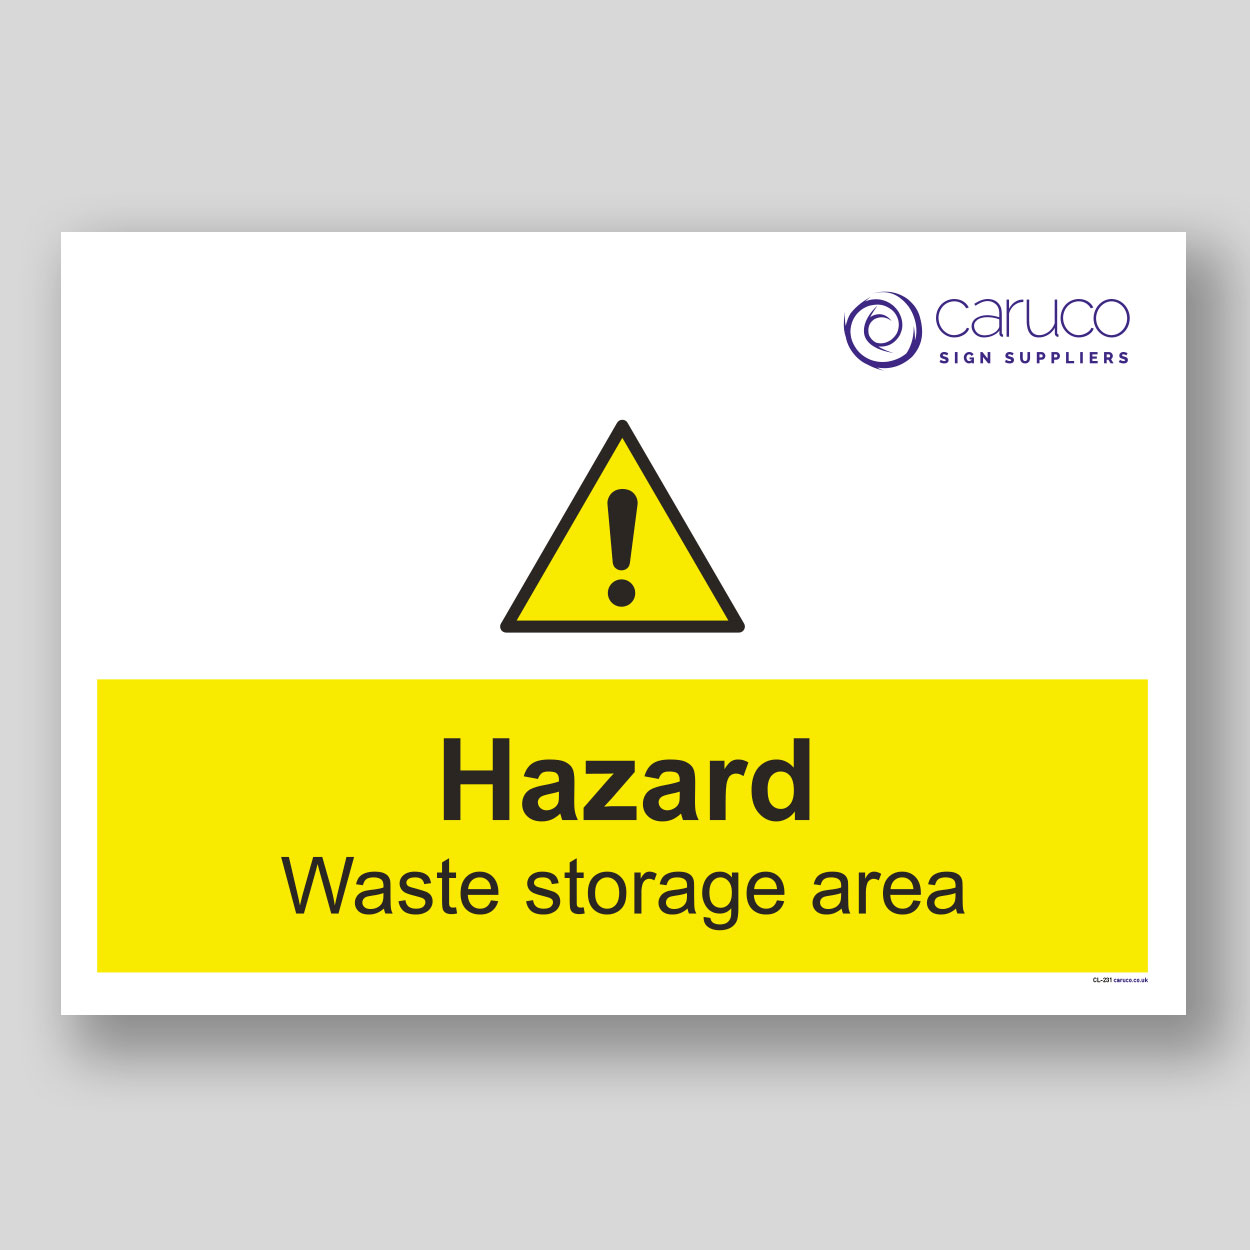 CL-231 Hazard - waste storage area